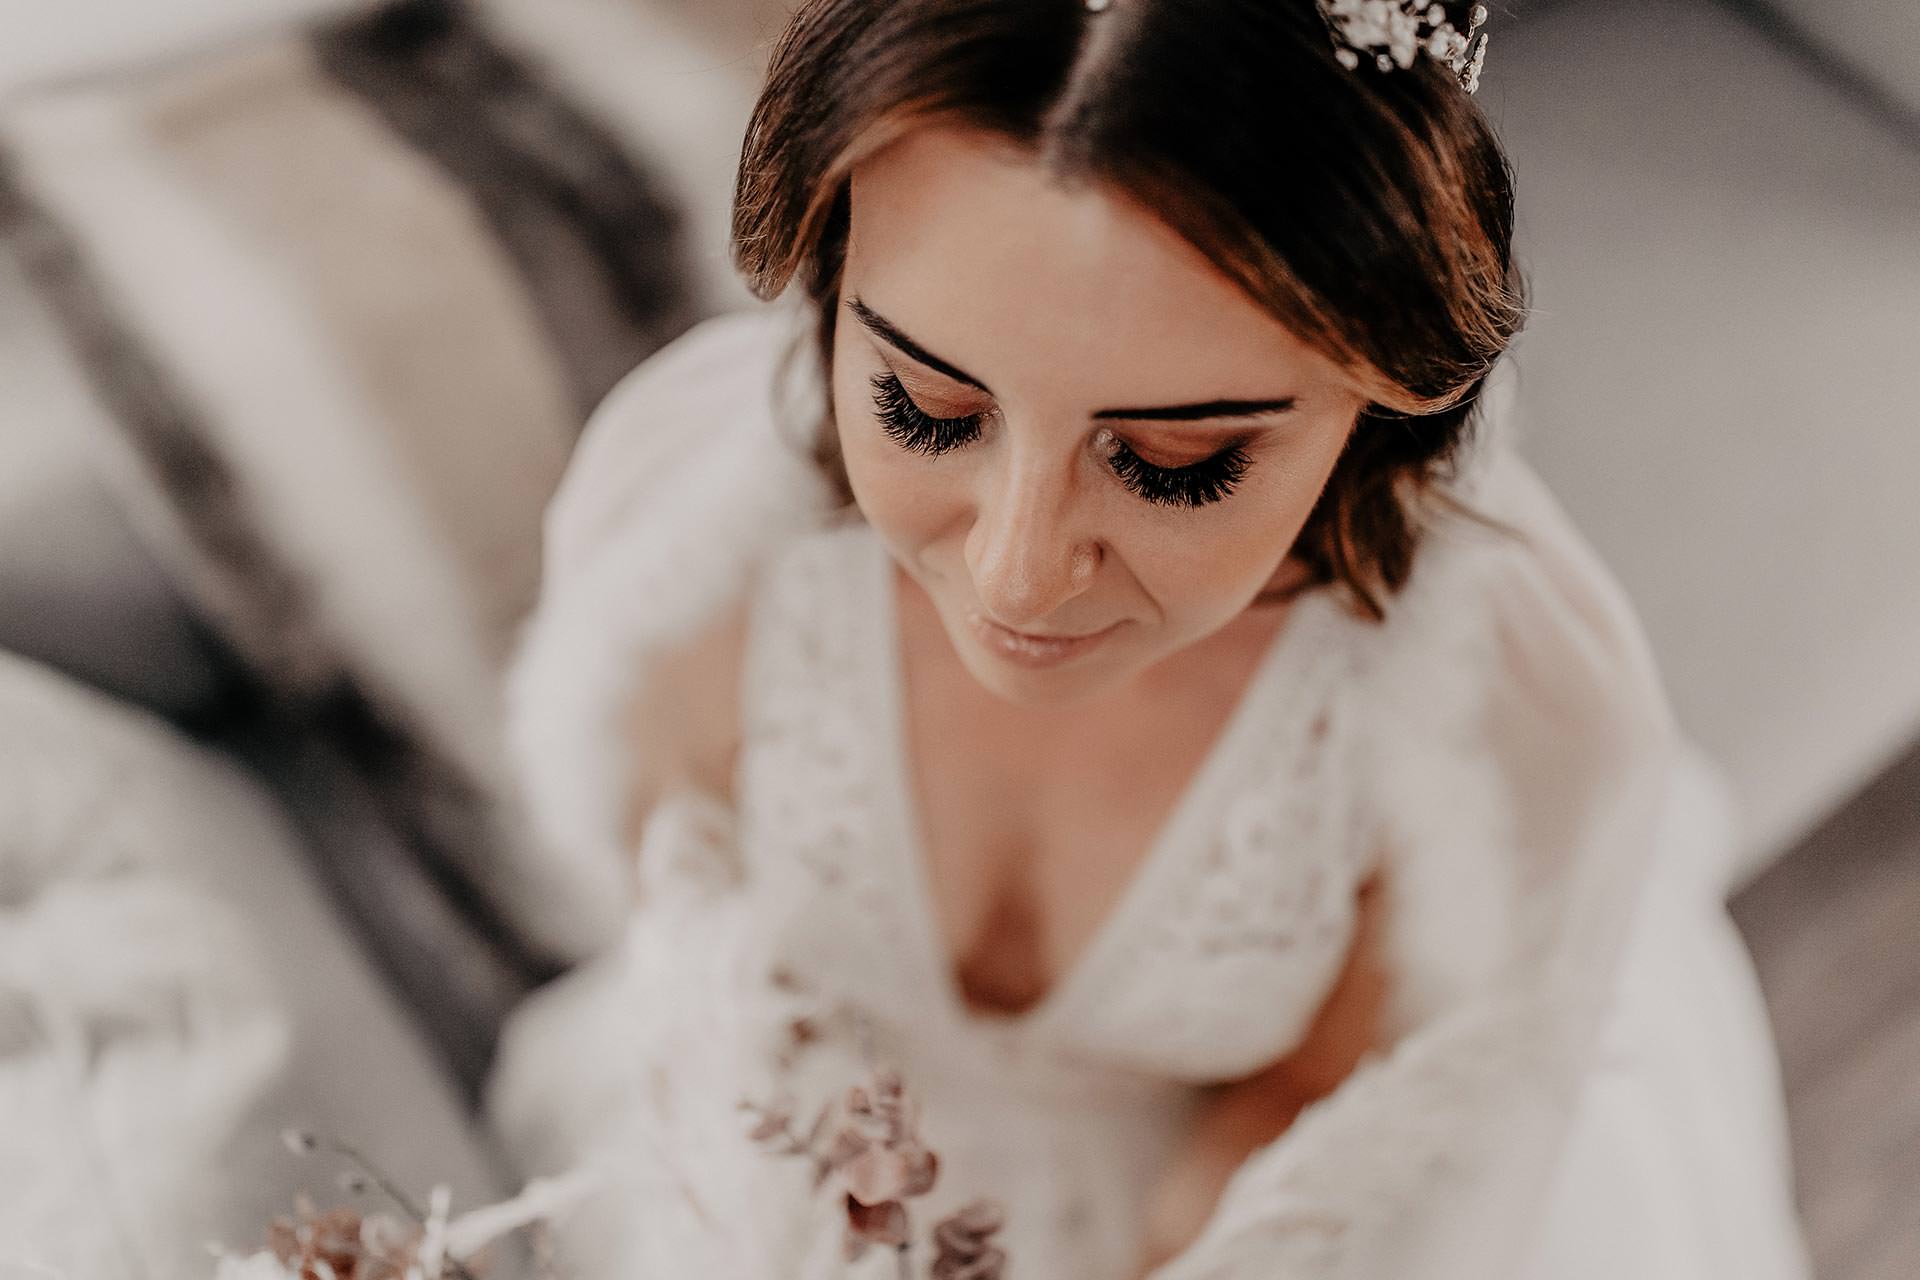 Am Blog gibt es etwas Neues zu unserer Herbsthochzeit. Ich zeige dir mein Brautstyling mit dem für mich perfekten Hochzeitskleid, Braut-Frisur und Make-up. Mehr auf www.whoismocca.com #hochzeit #traumhochzeit #pronovias #brautkleid #brautstyling